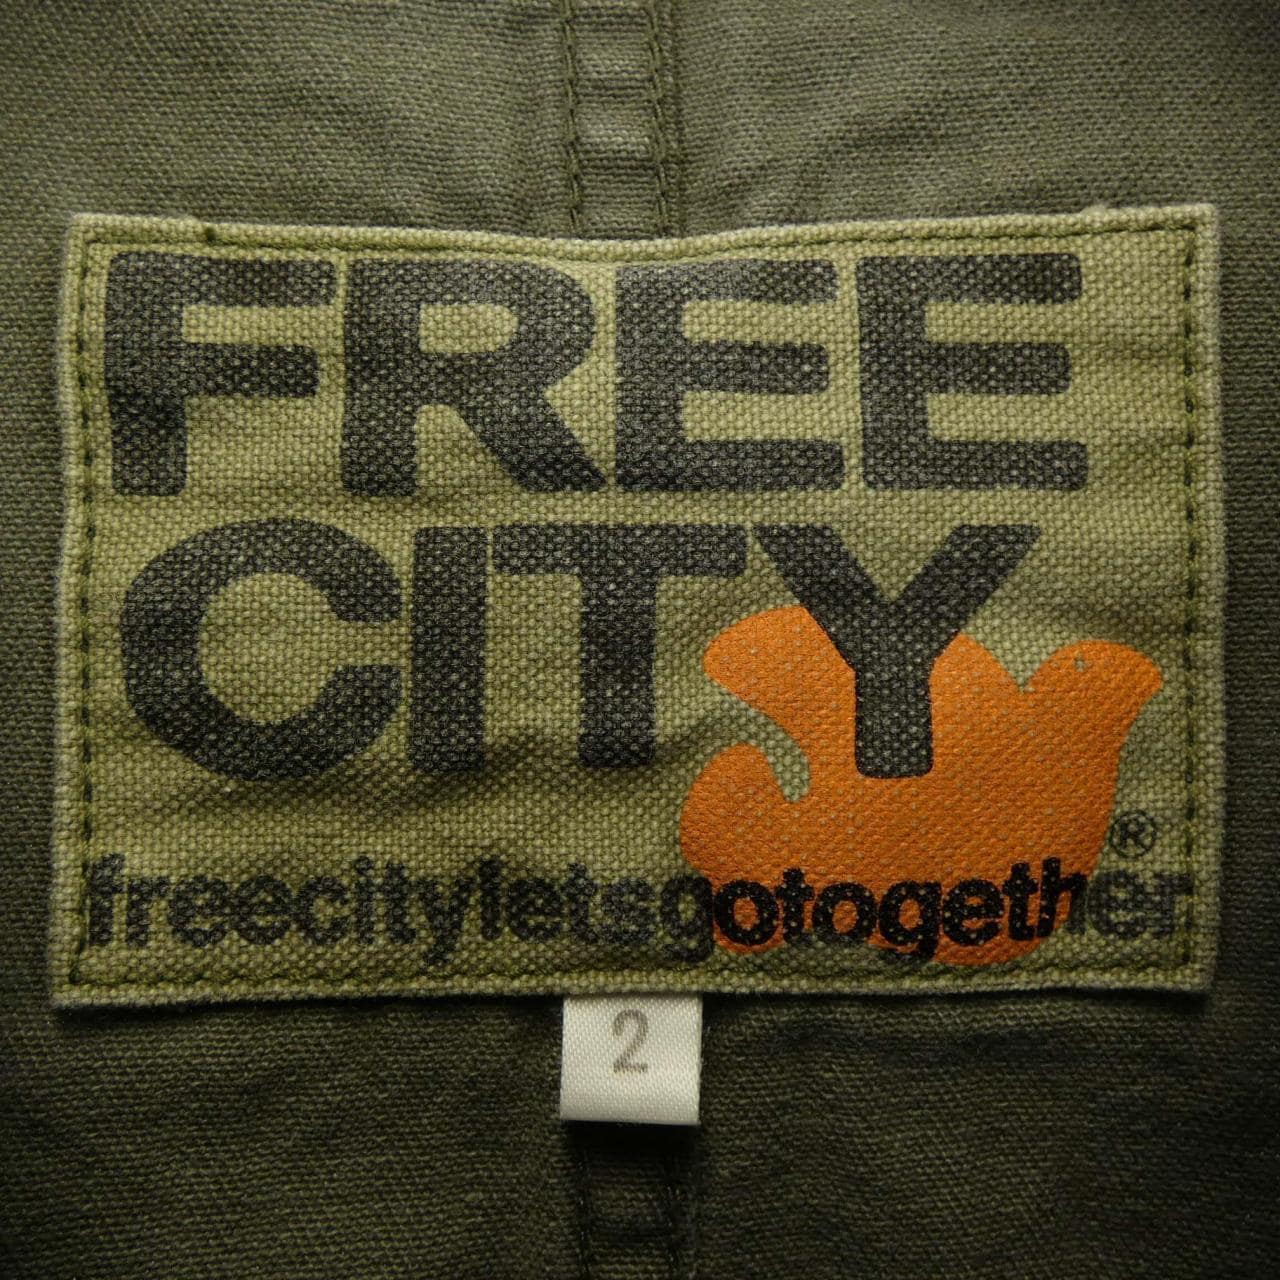 自由城市FREE CITY夹克衫